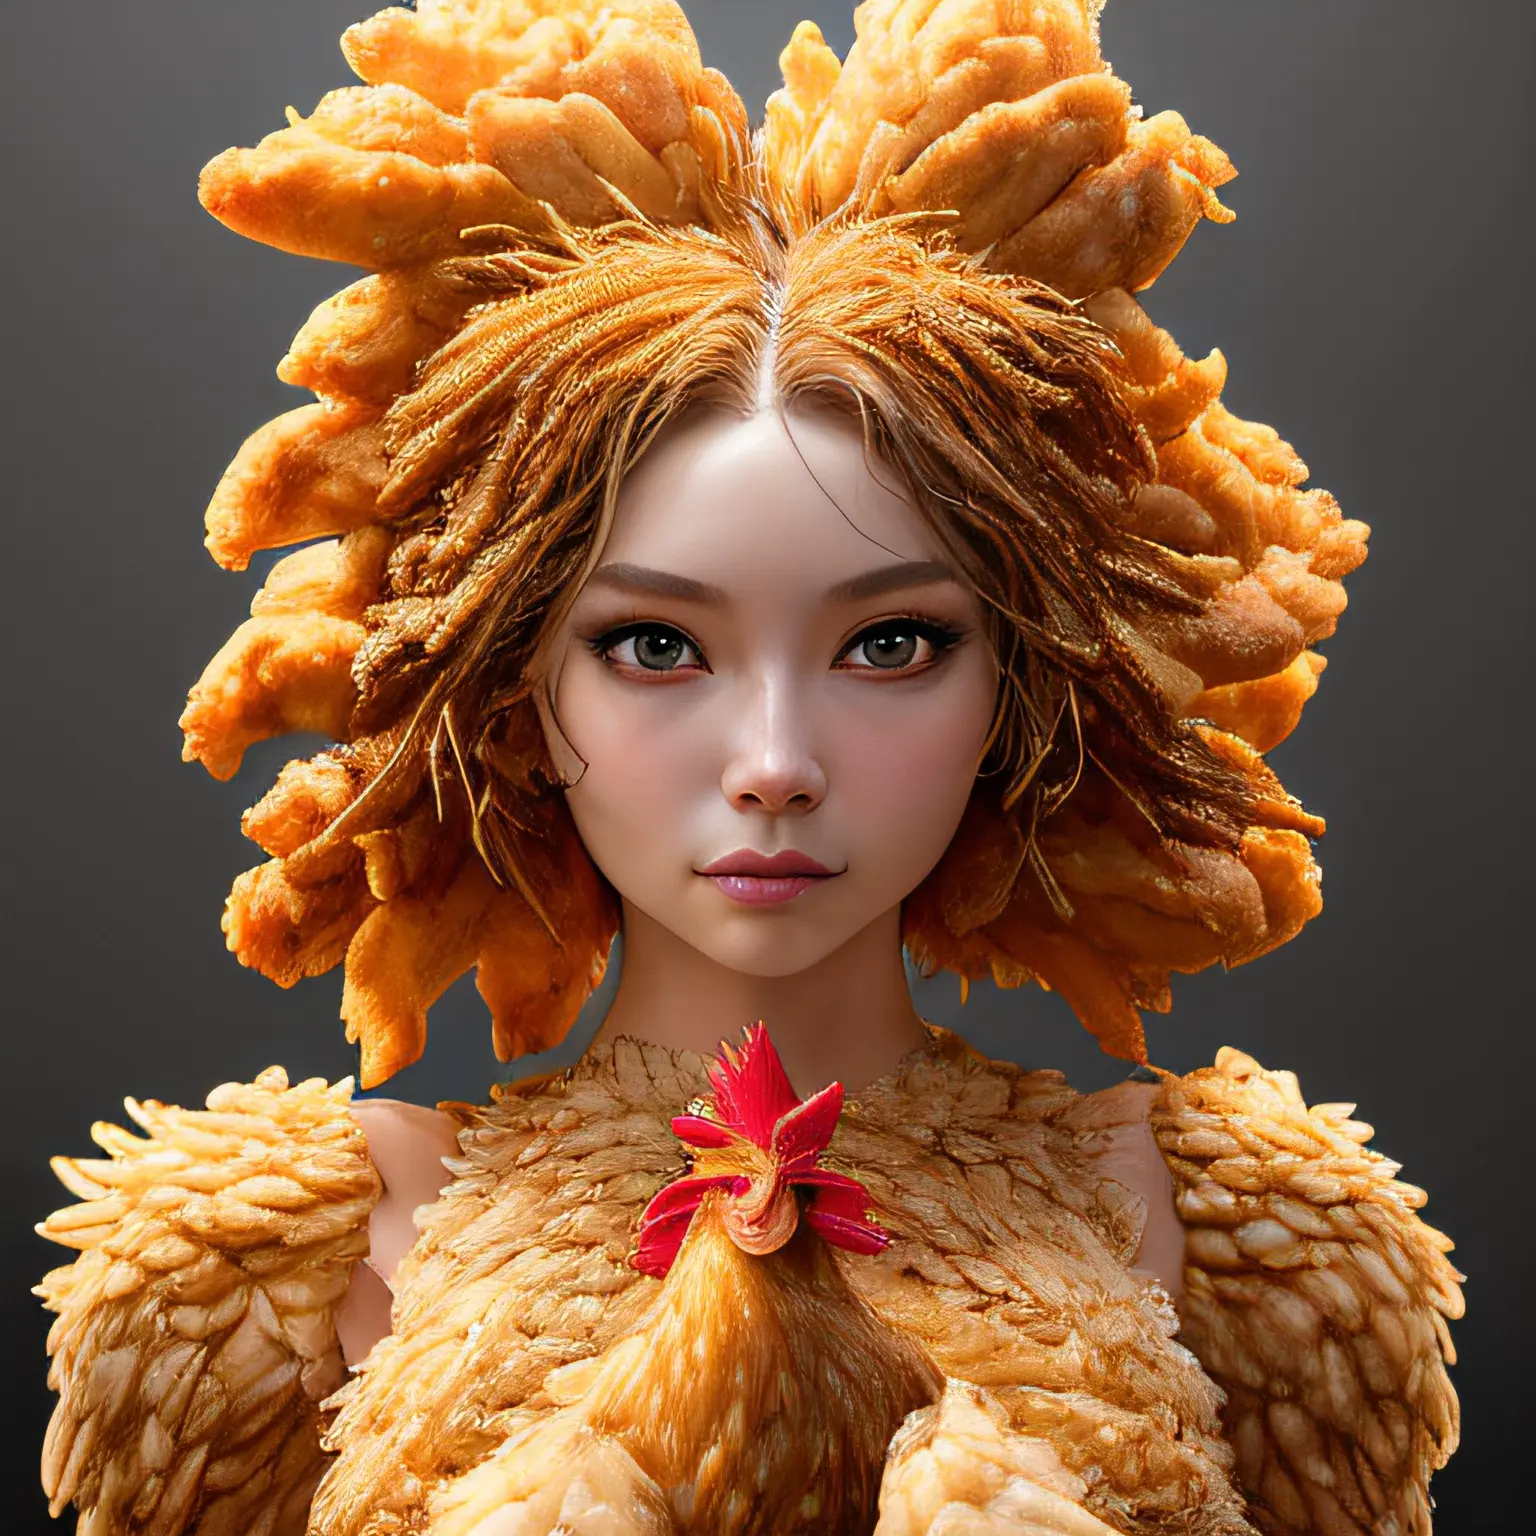 Chicken Nugget Woman